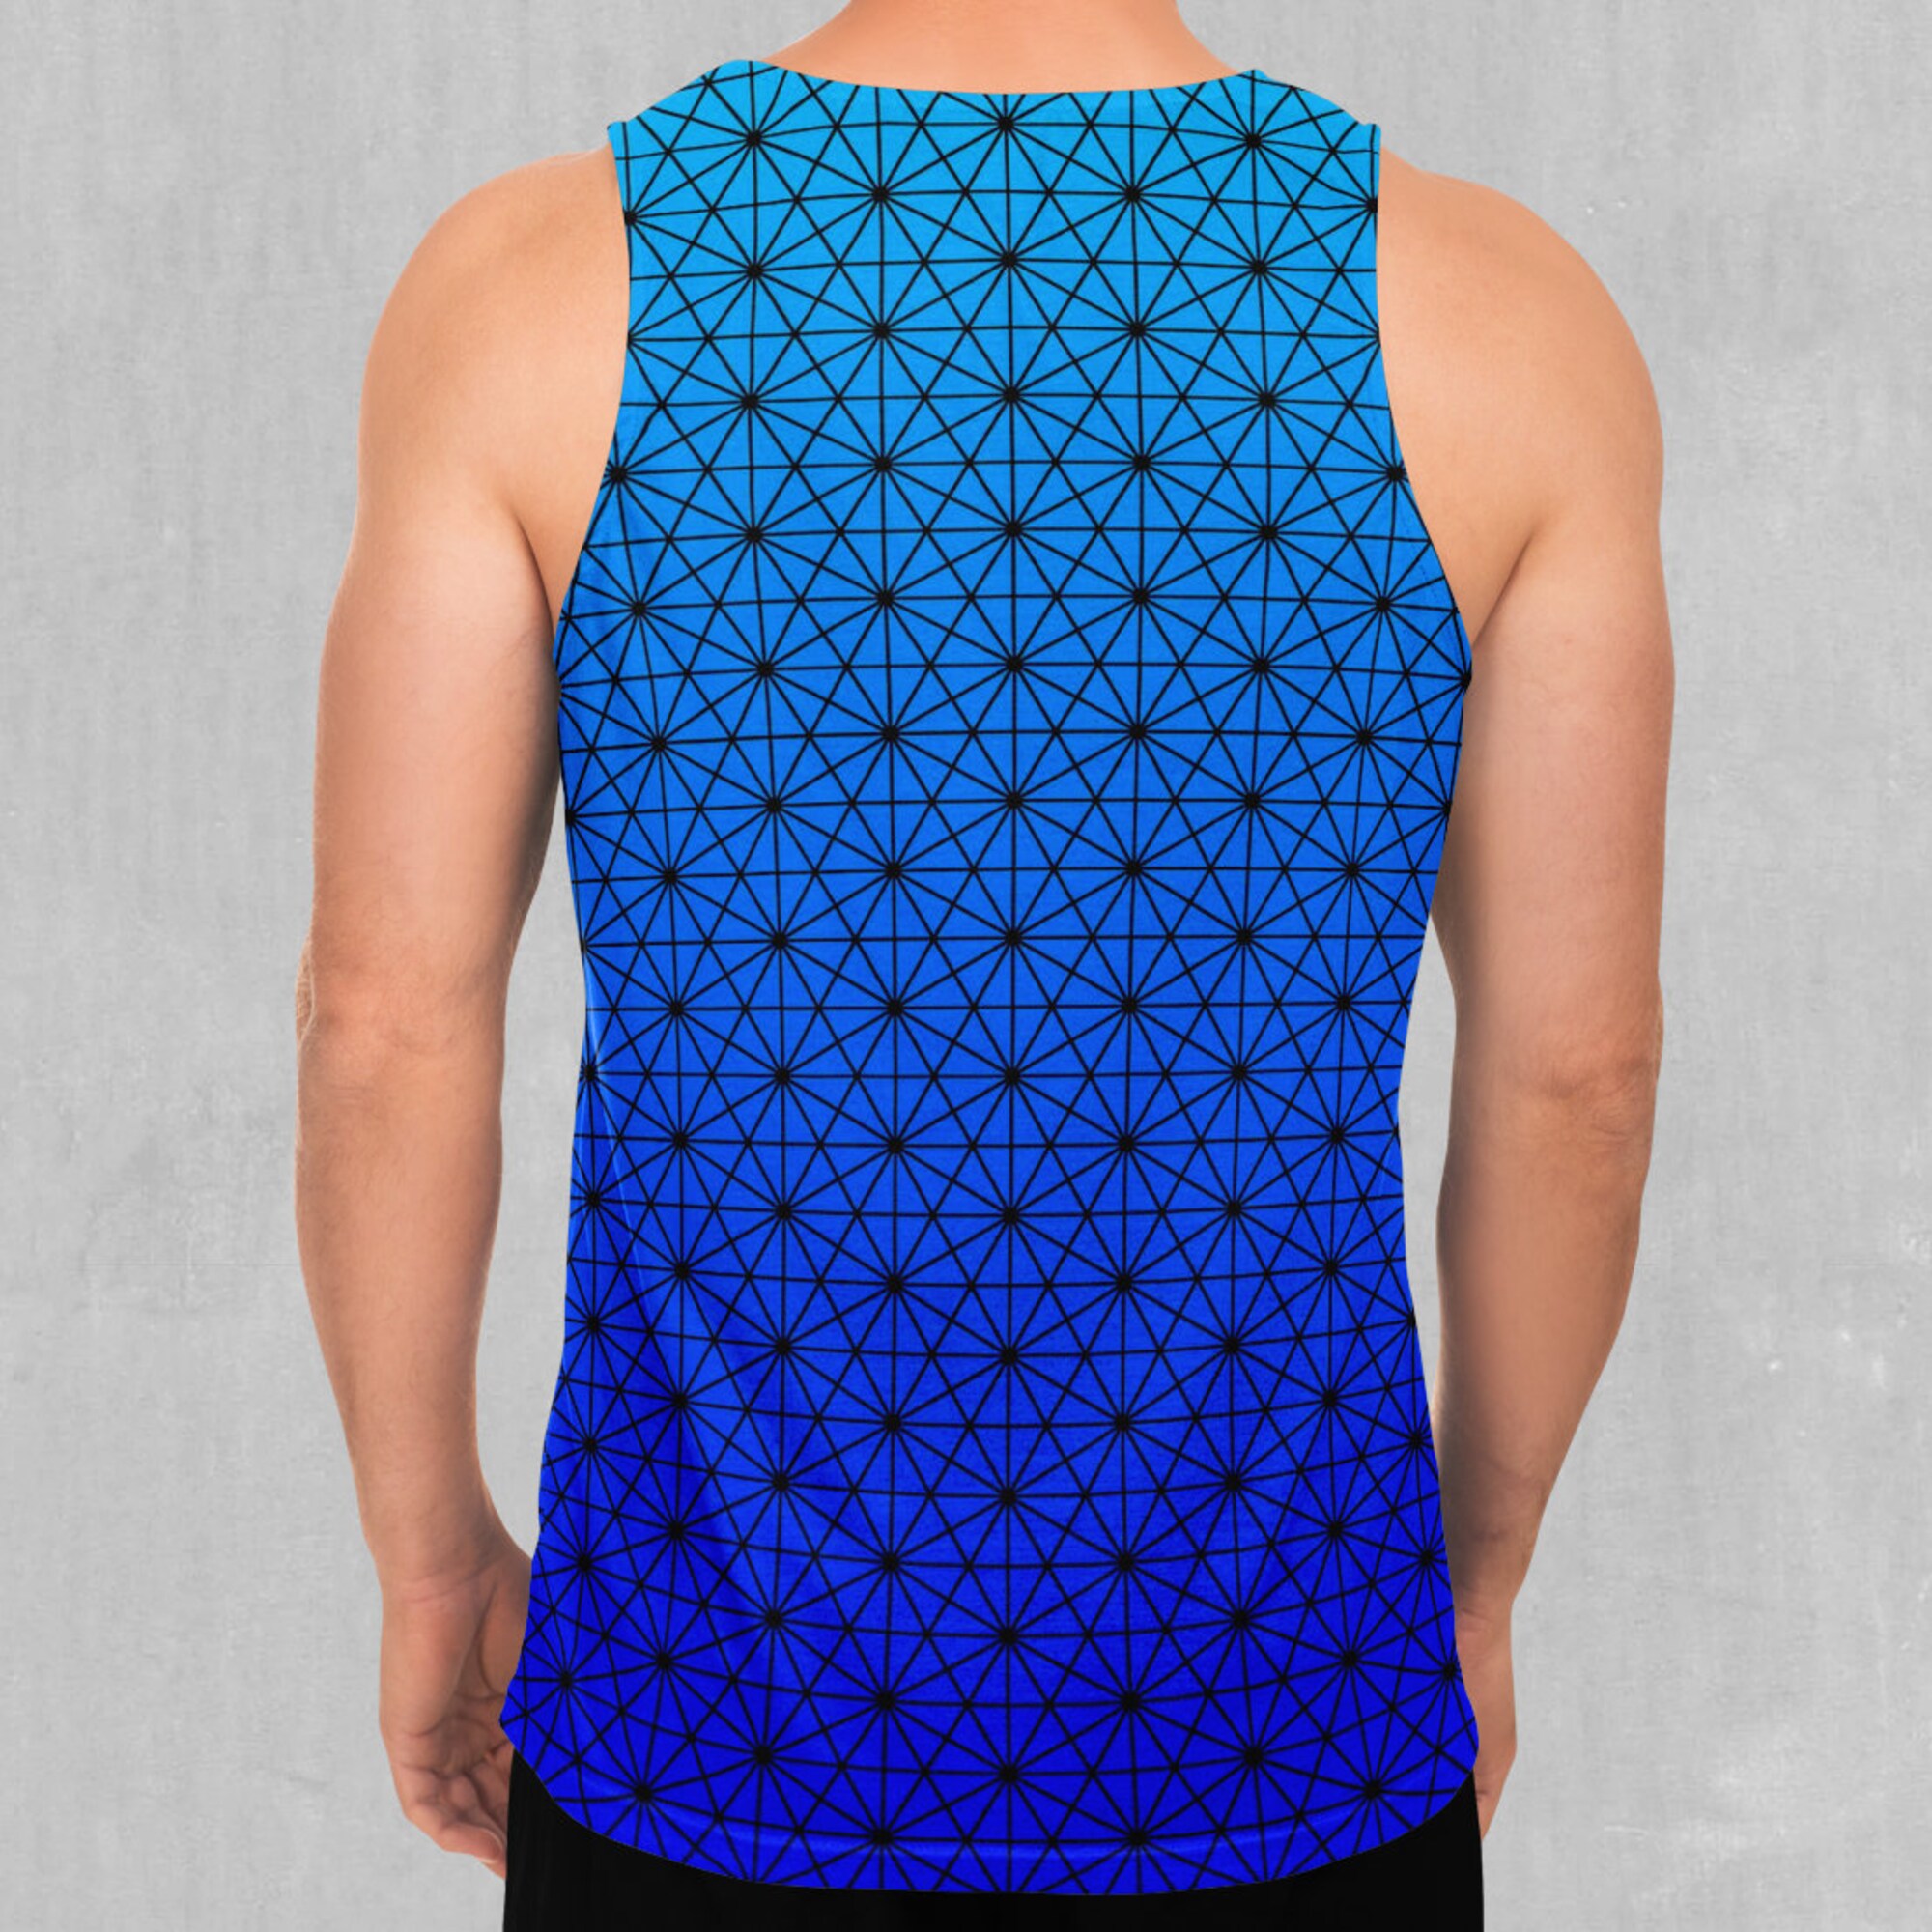 Star Net (Frost) Men's Tank Top Muscle Sleeveless Shirt